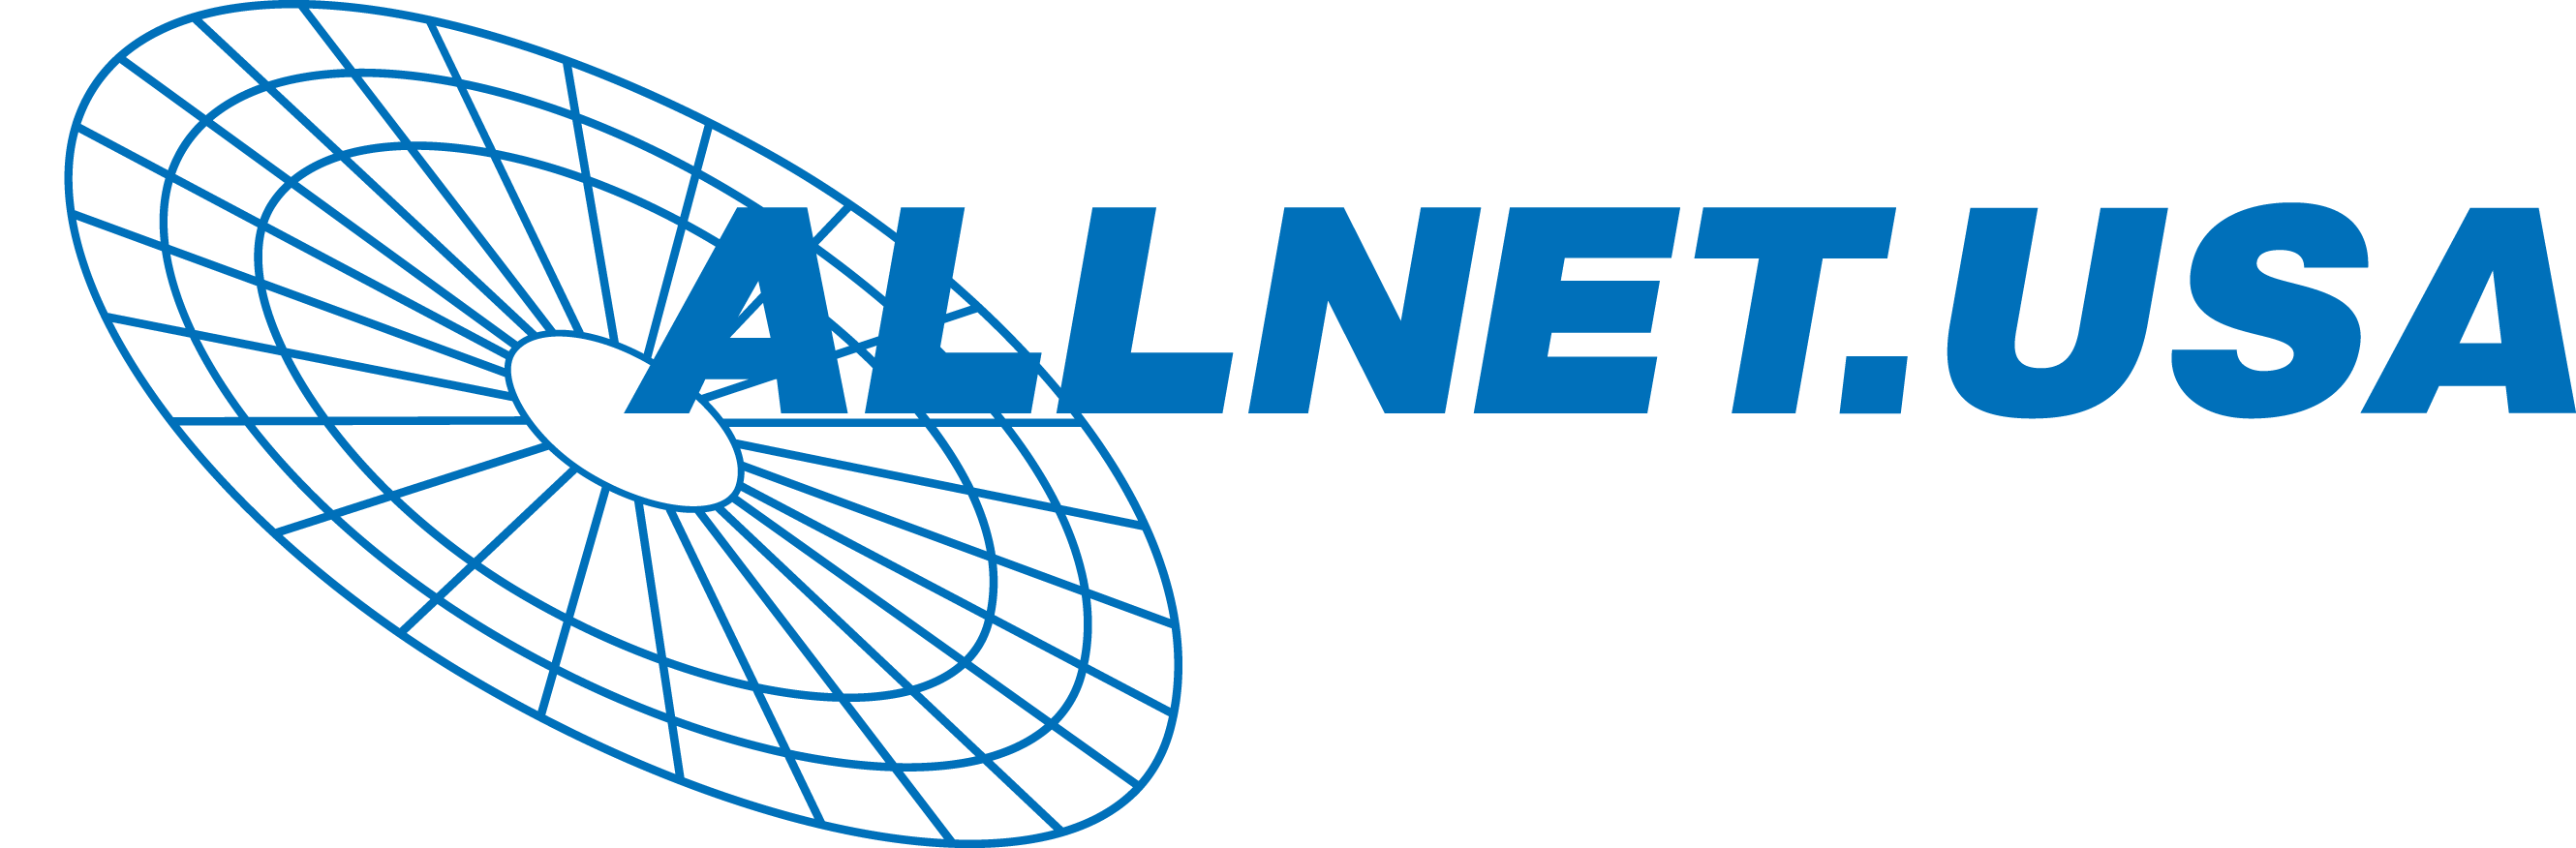 ALLNET USA-Logo